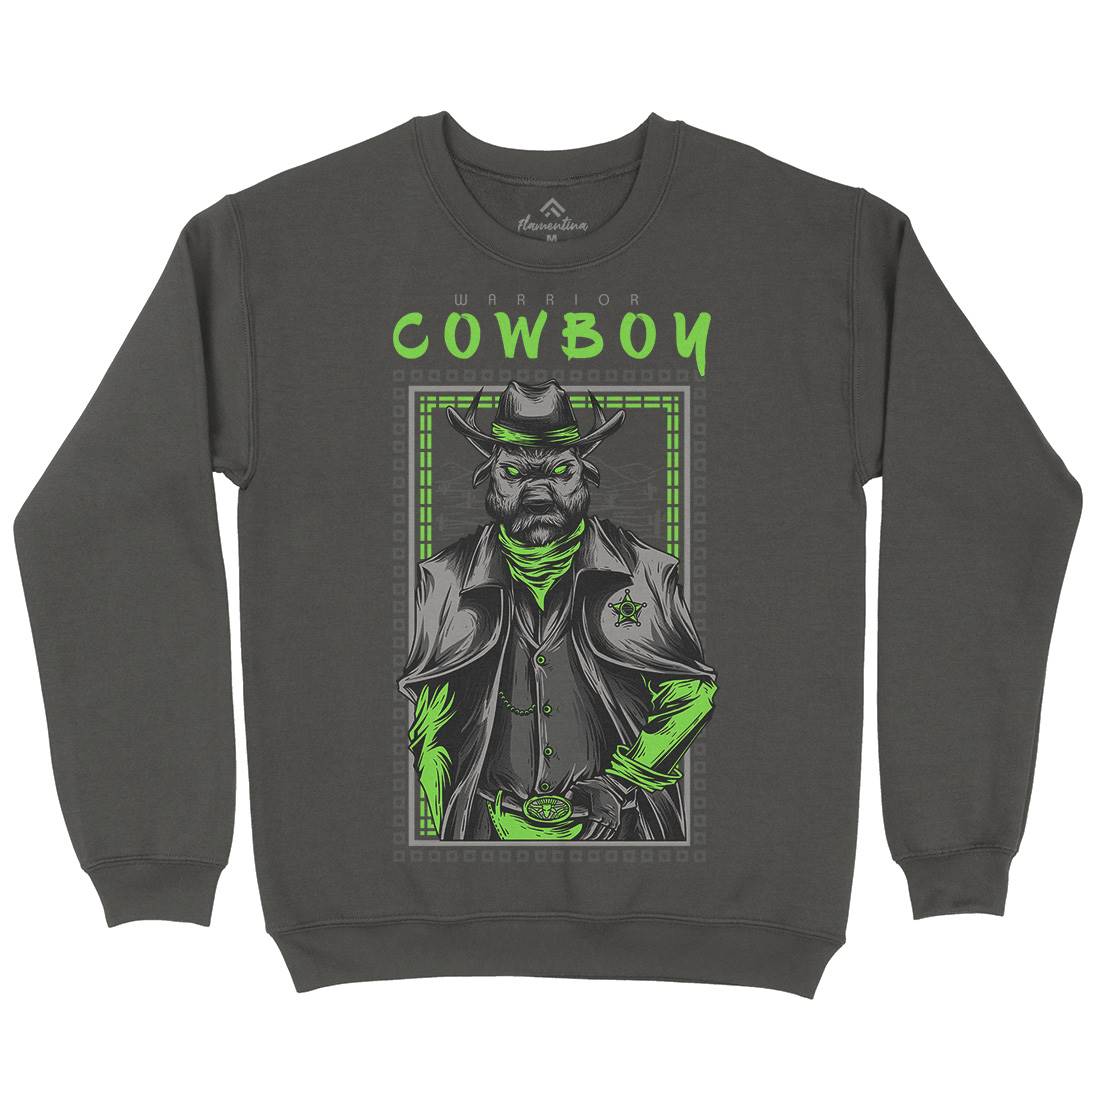 Cowboy Warrior Kids Crew Neck Sweatshirt American D735